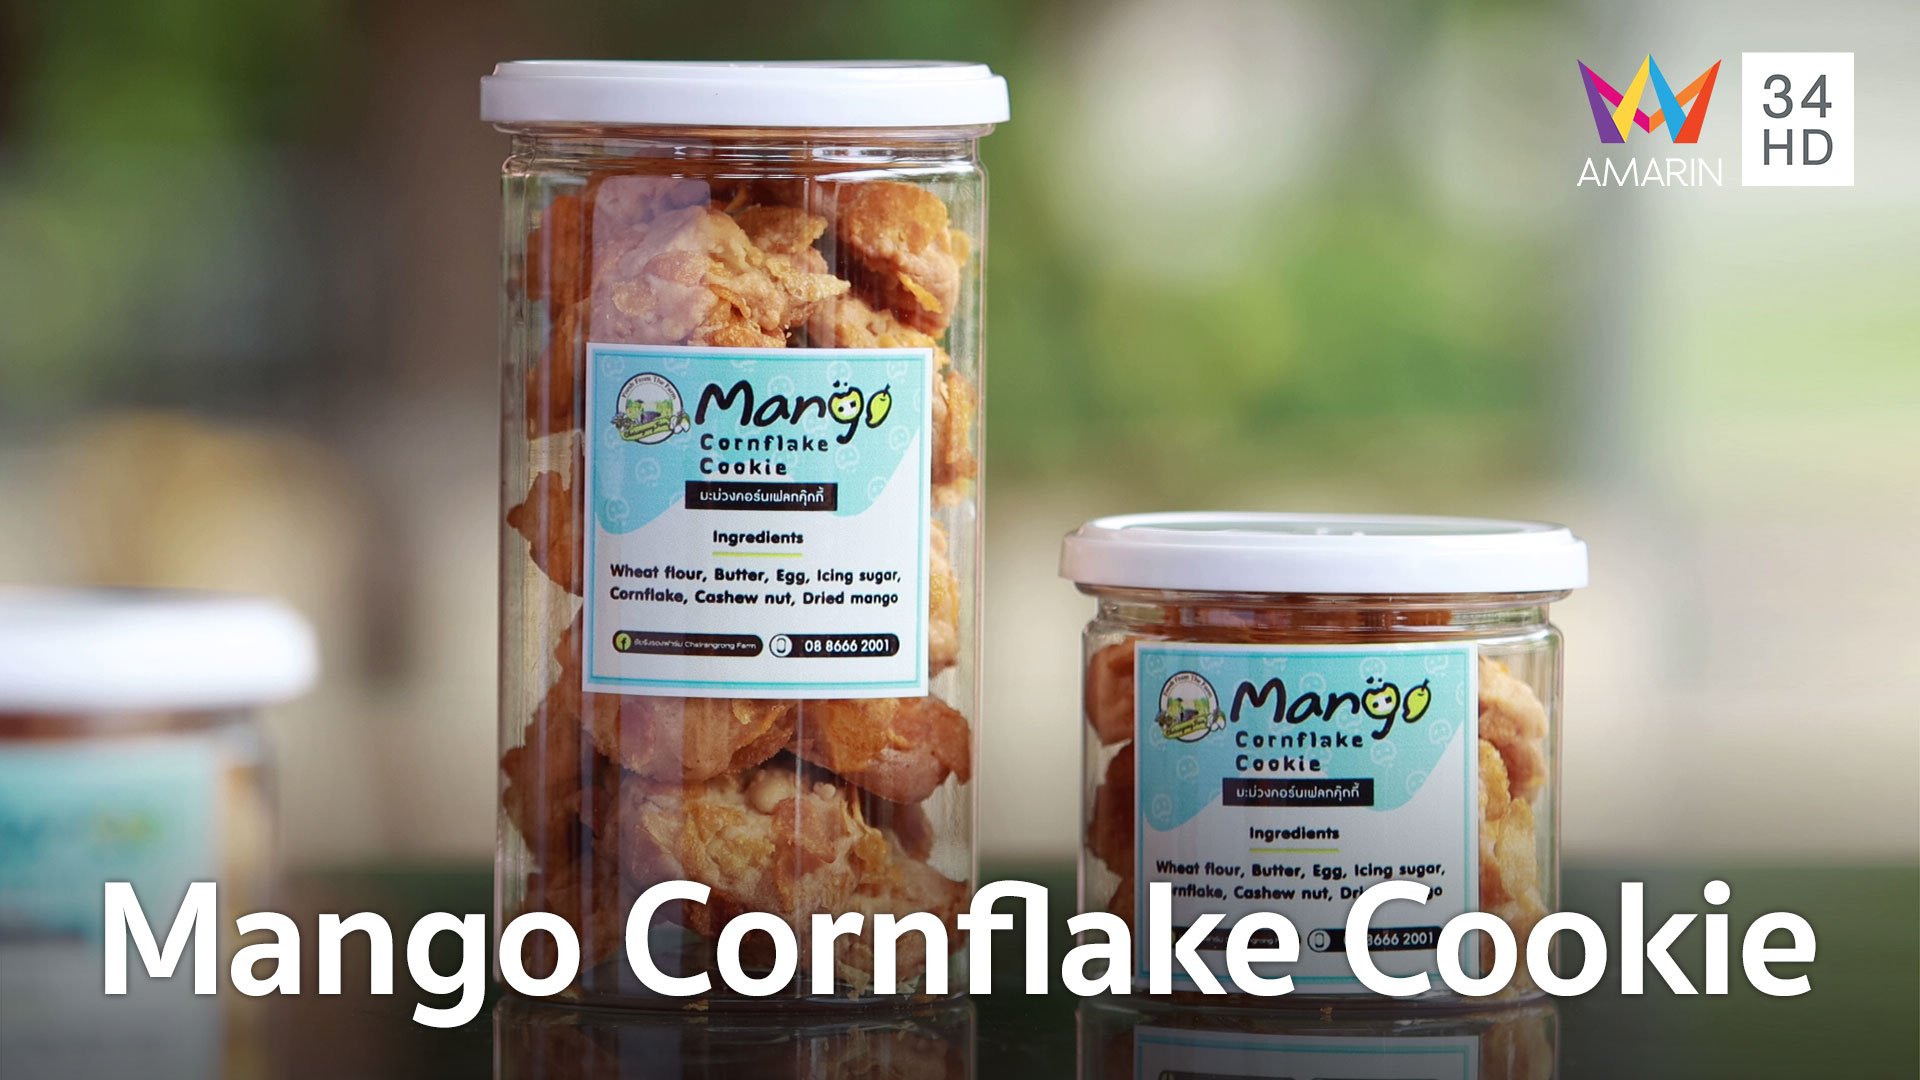 ปลูกด้วยรักษ์ | EP.3 Mango Cornflake Cookie วิสาหกิจชุมชน ชัยรังรอง ฟาร์ม จ.สระบุรี | 20 เม.ย. 65 | AMARIN TVHD34